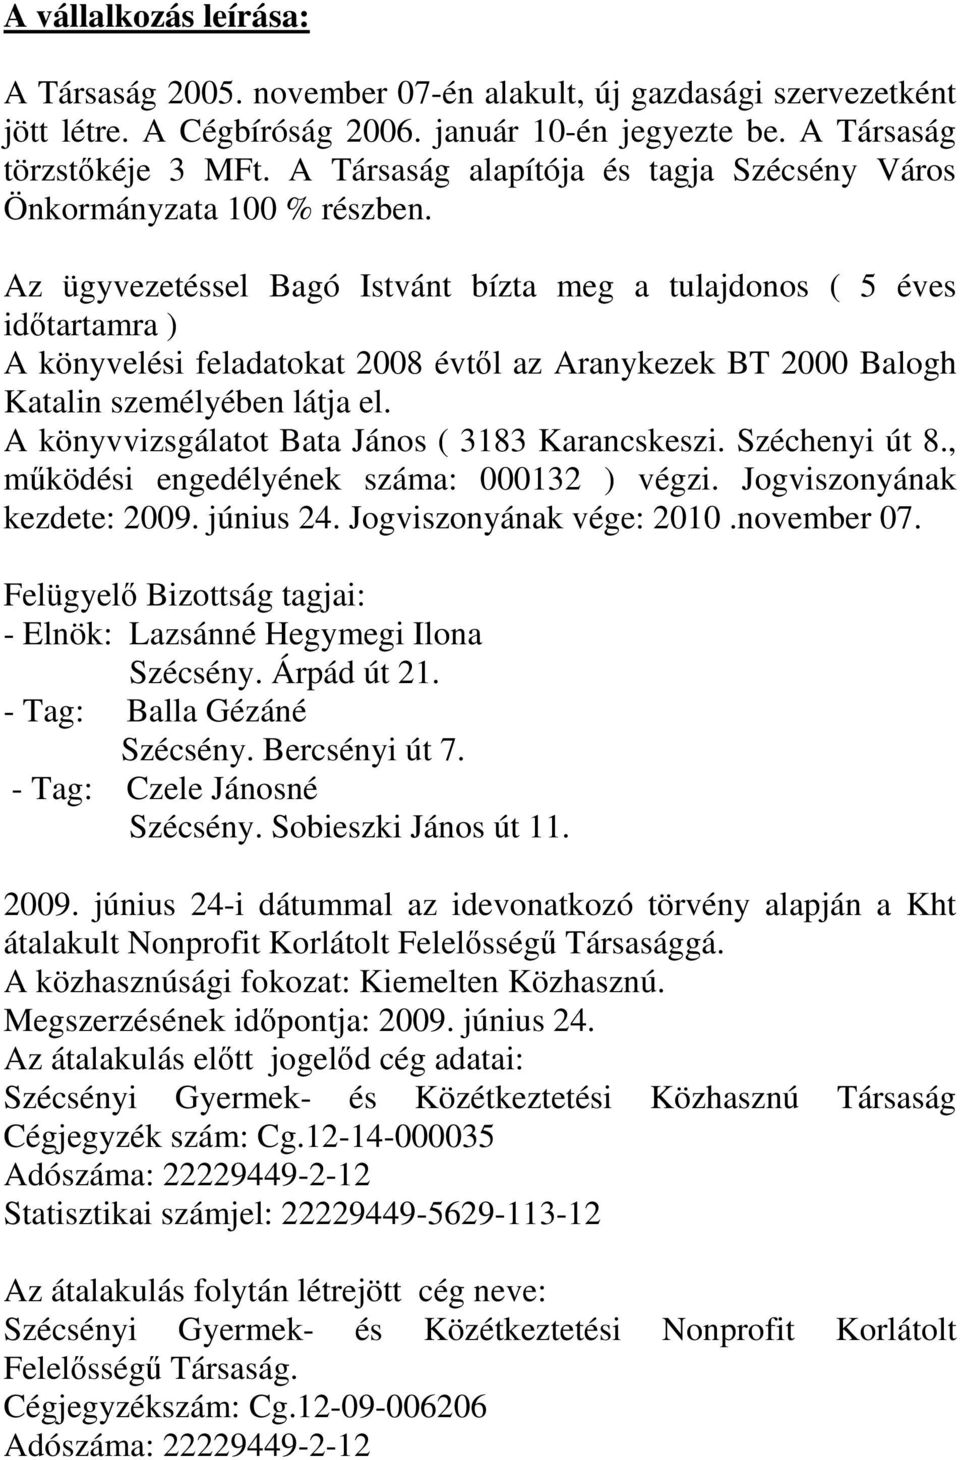 Az ügyvezetéssel Bagó Istvánt bízta meg a tulajdonos ( 5 éves idıtartamra ) A könyvelési feladatokat 2008 évtıl az Aranykezek BT 2000 Balogh Katalin személyében látja el.